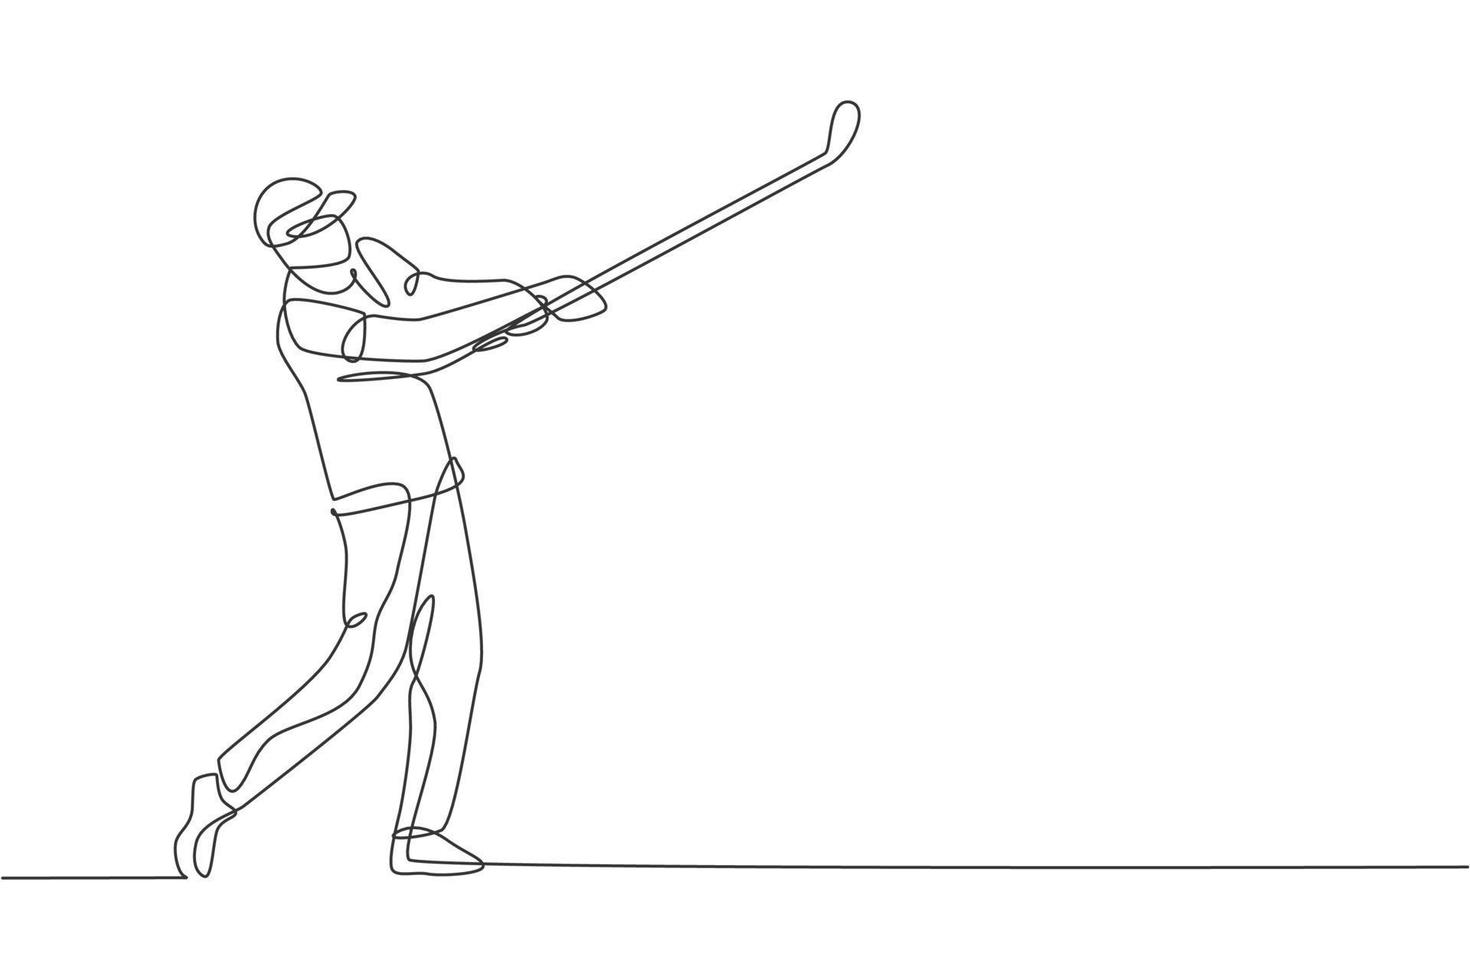 un disegno a linea singola di un giovane giocatore di golf sportivo ha colpito la palla utilizzando l'illustrazione grafica vettoriale della mazza da golf. concetto di sport sano. moderno disegno a linea continua per poster di tornei di golf